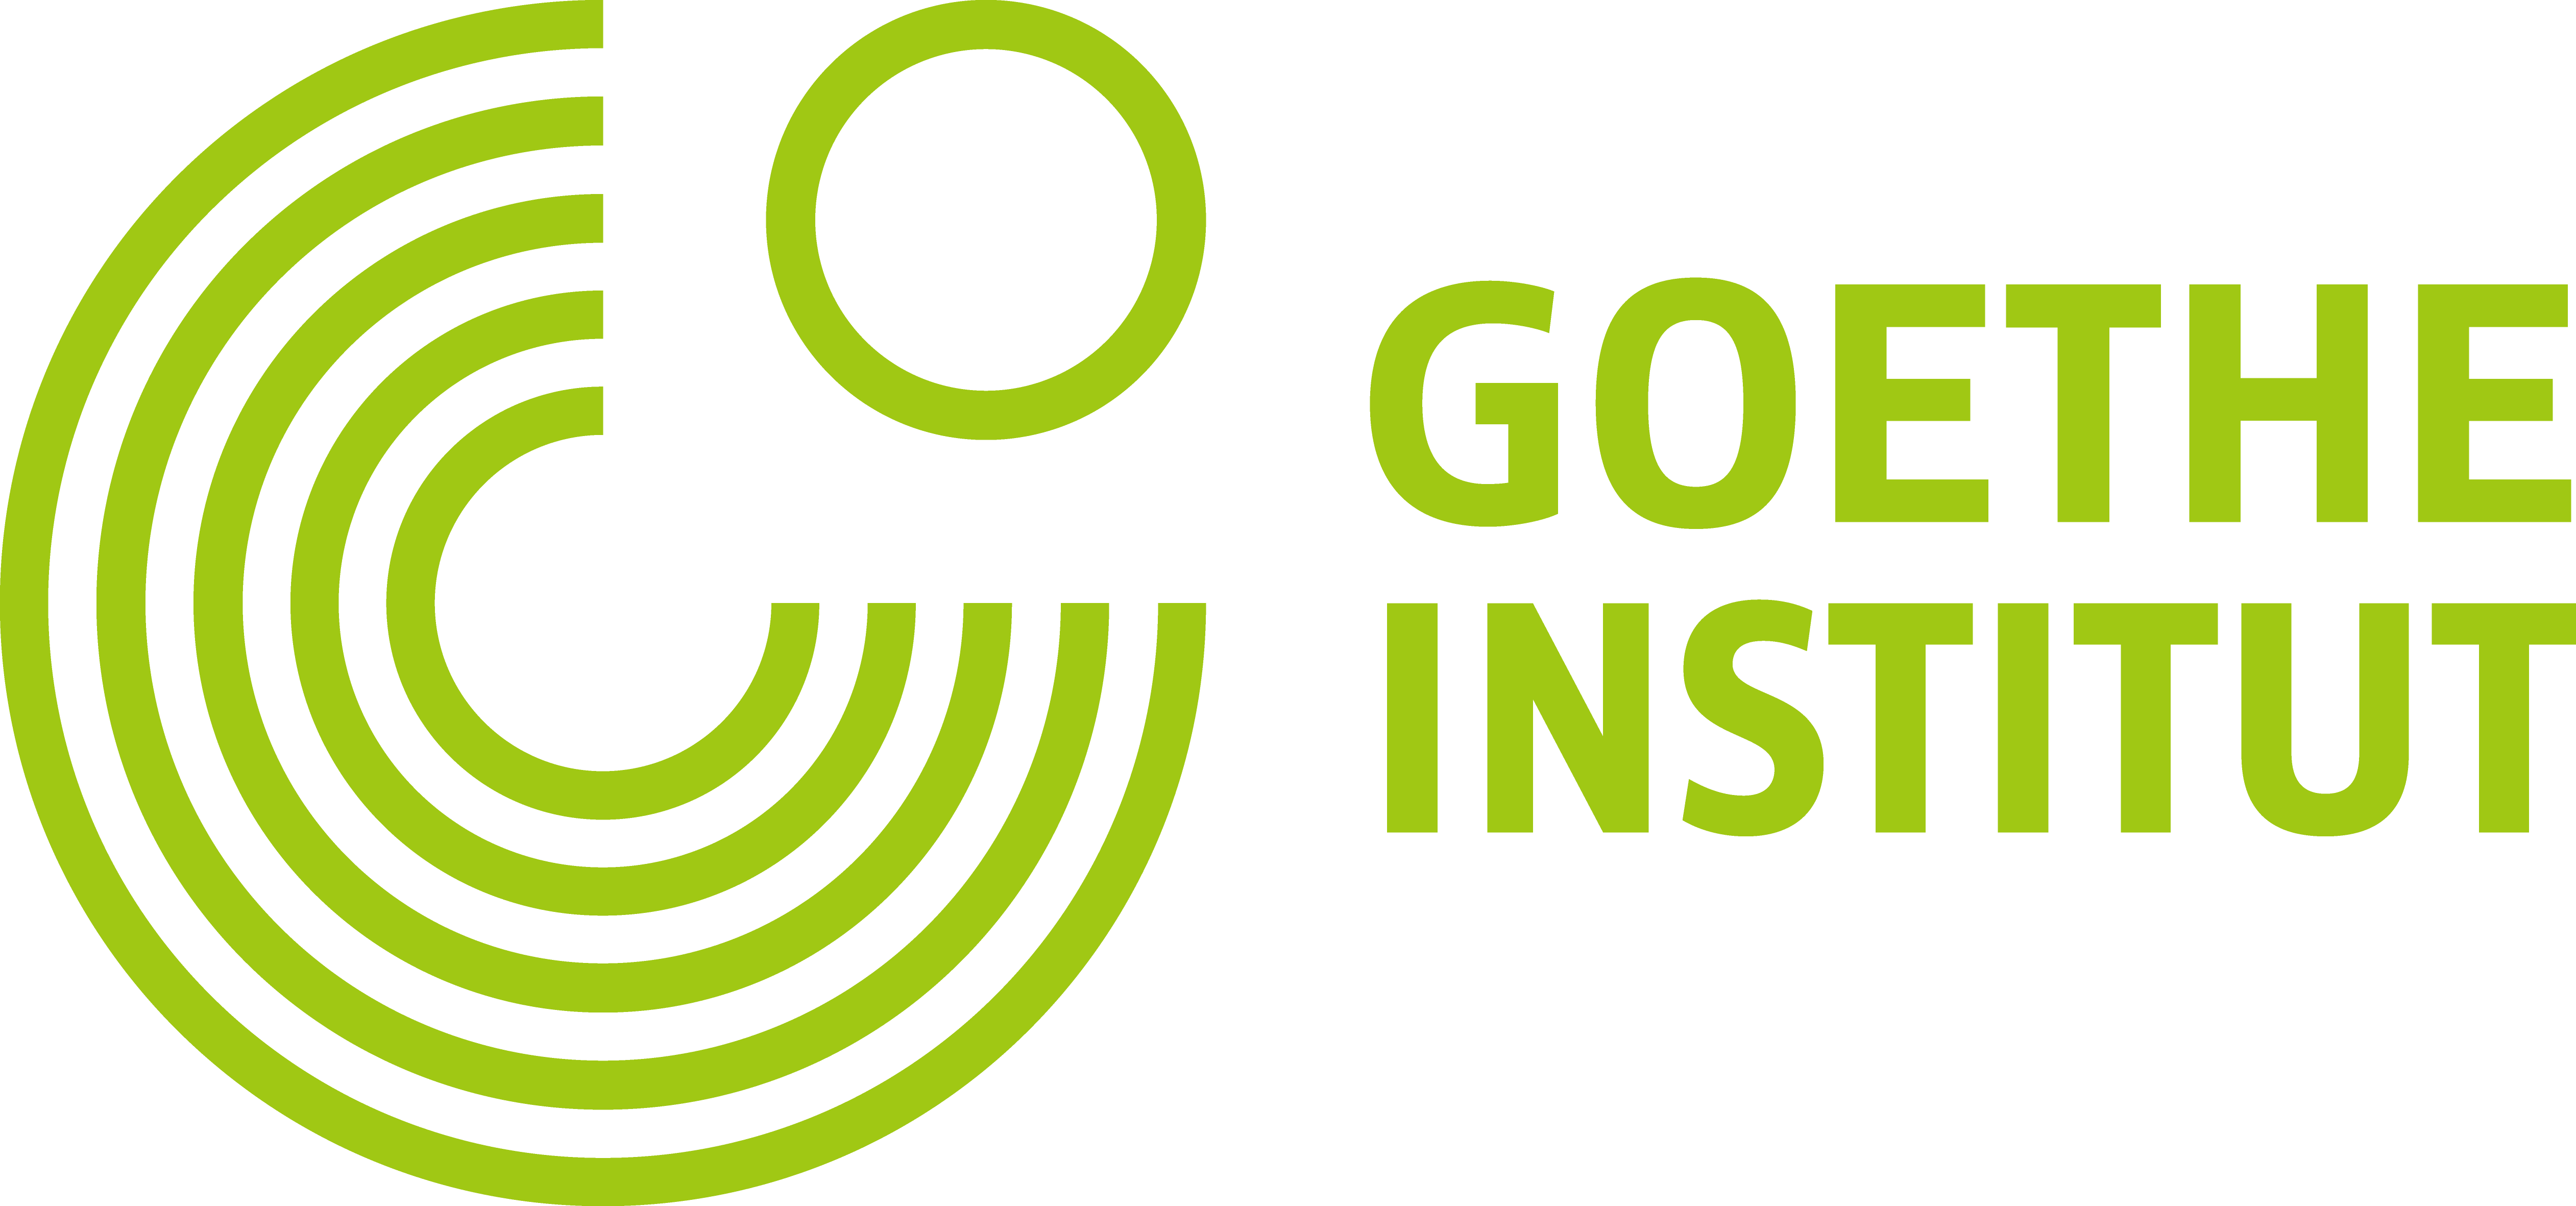 The Goethe-Institut of New York